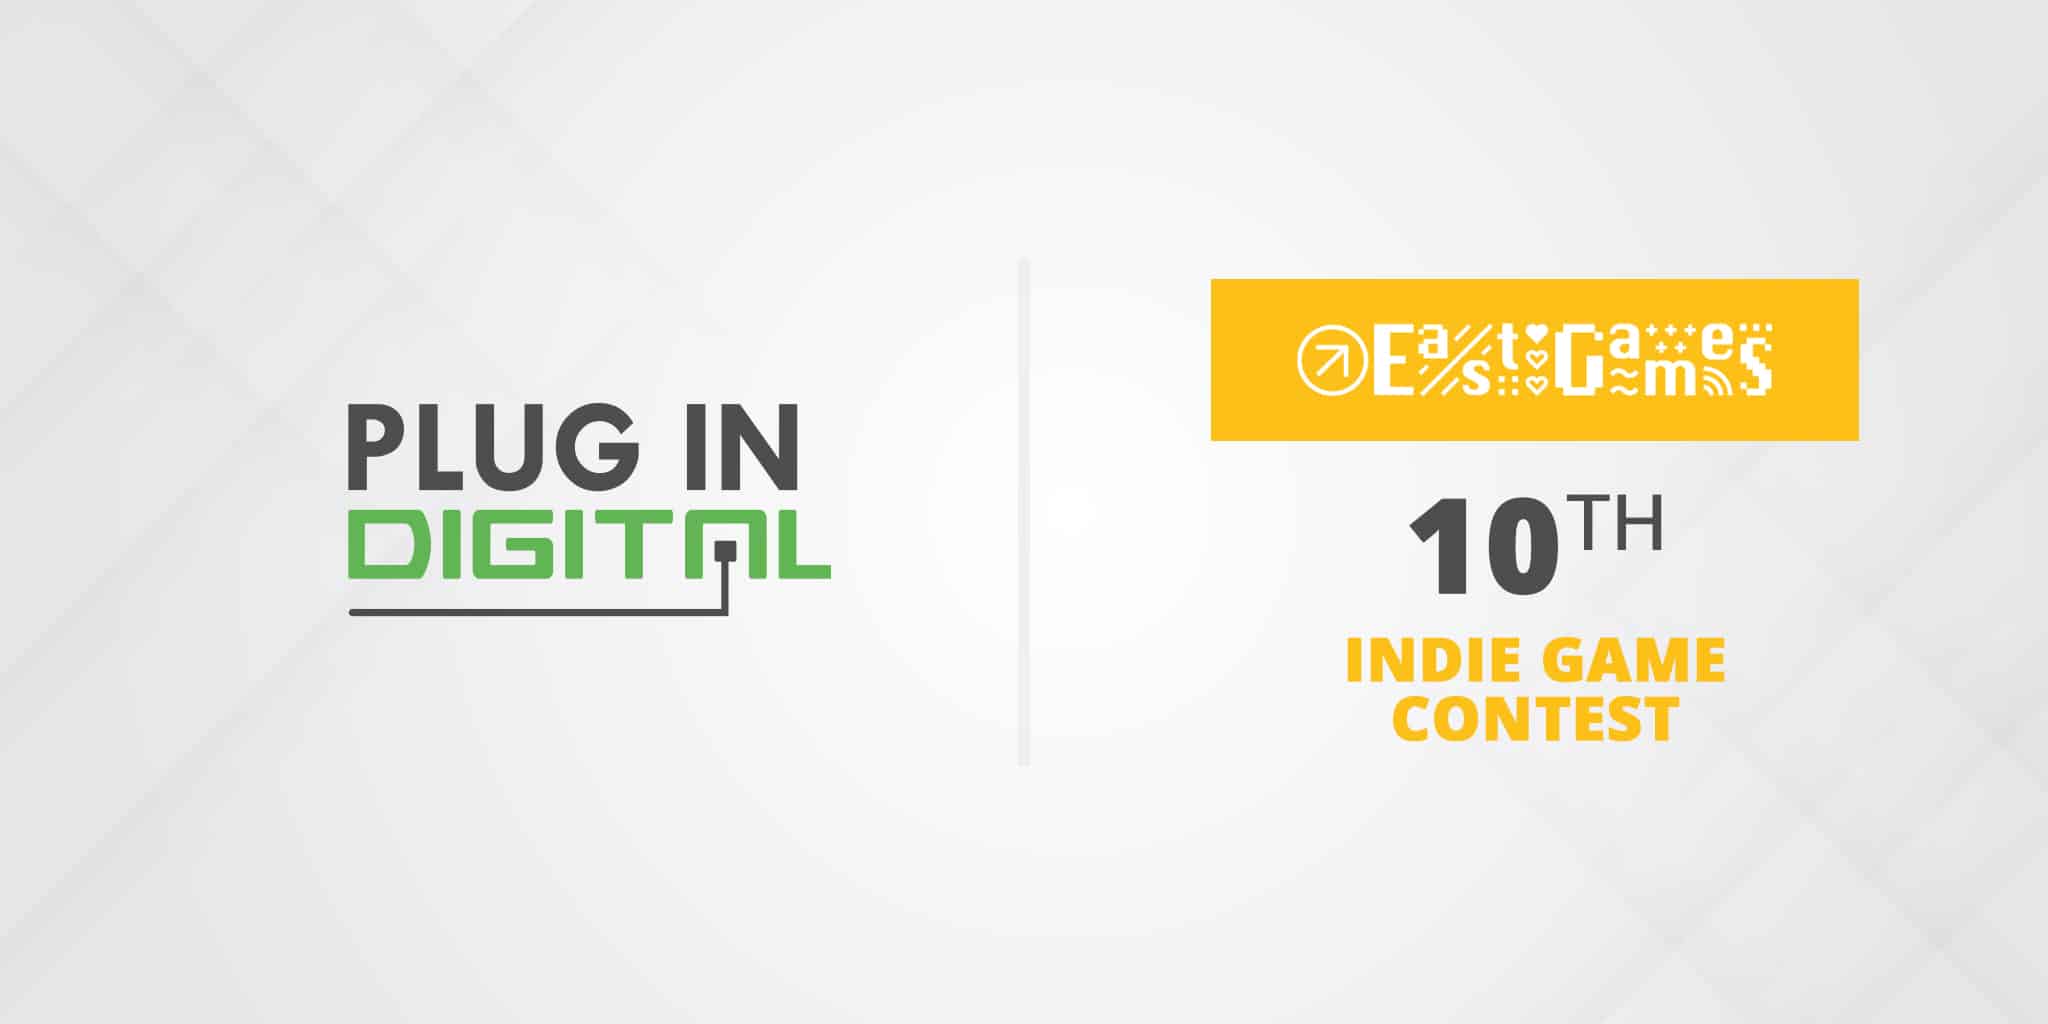 Plug In Digital sponsor of 10th Indie Game Contest